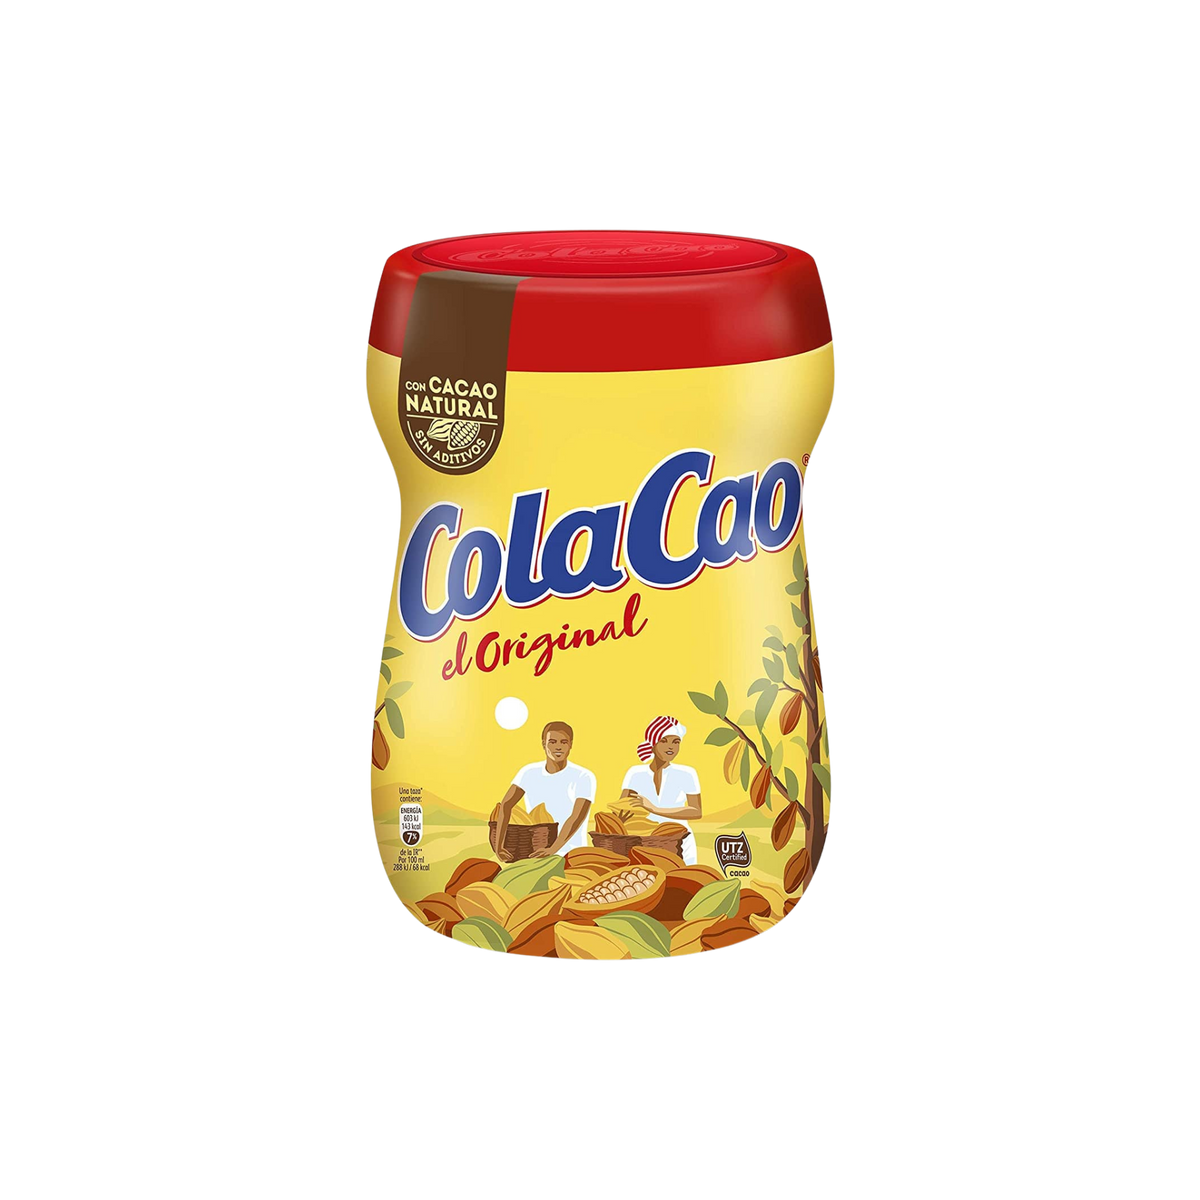 Cola Cao original - 760 g